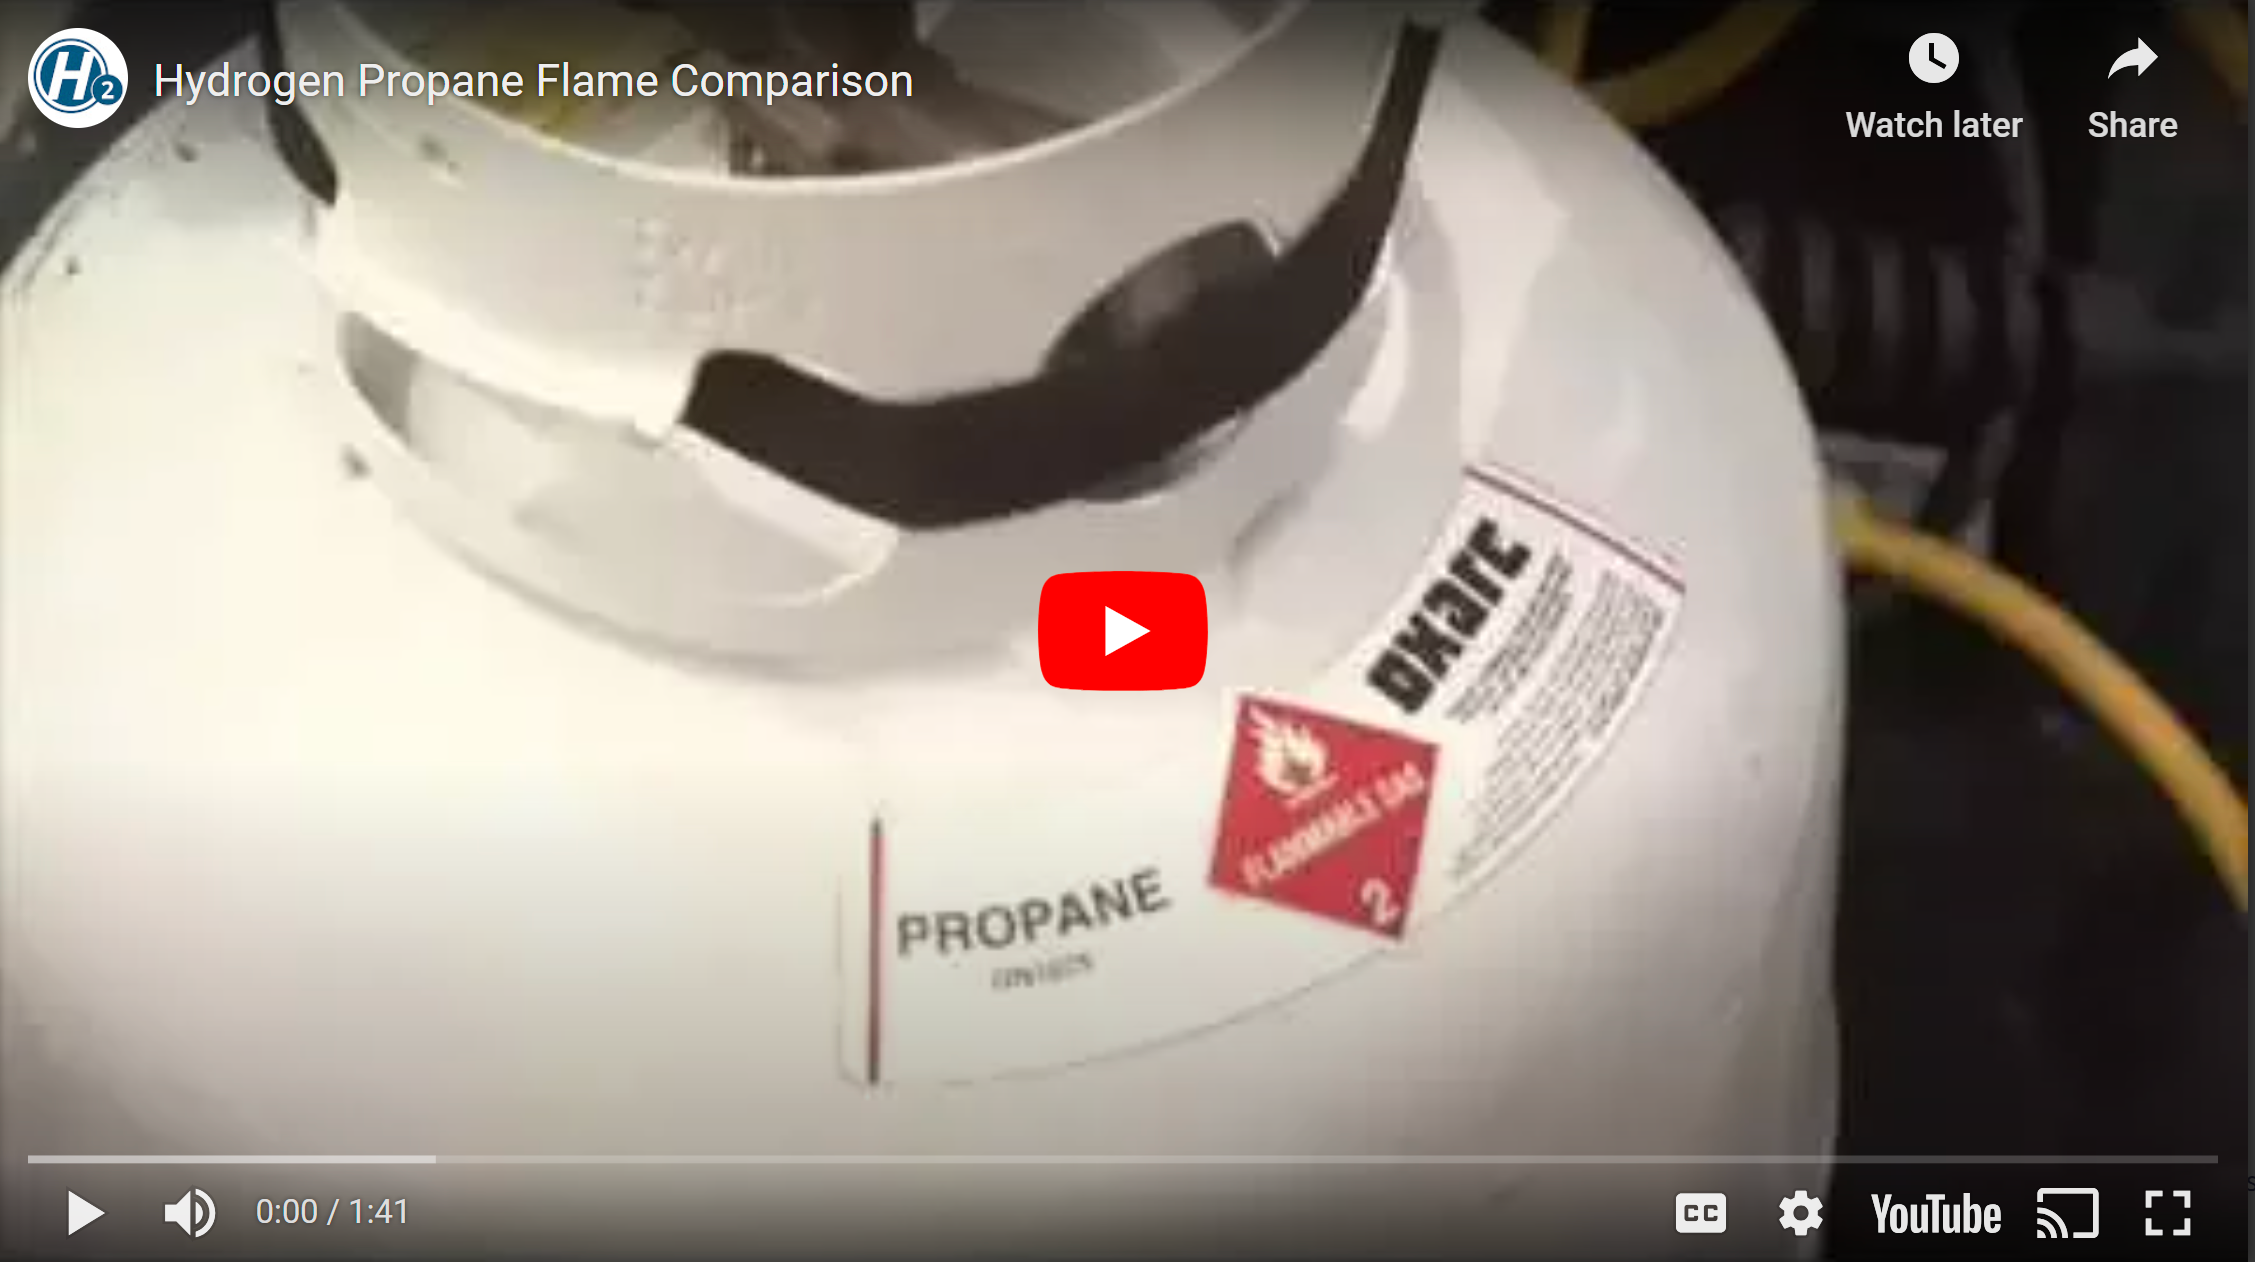 Hydrogen Propane Flame Comparison